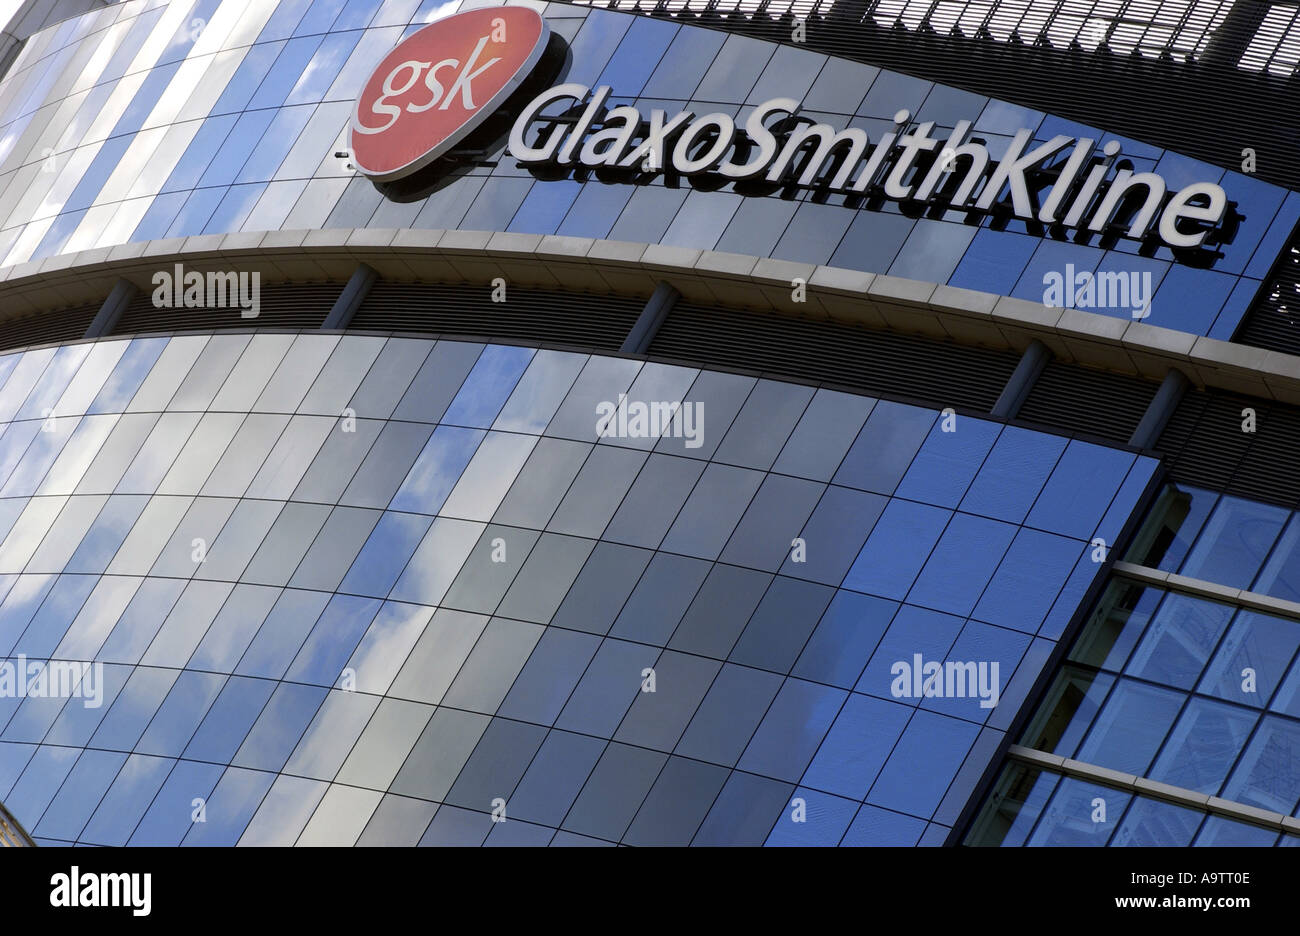 GlaxoSmithKline HQ in UK Stock Photo